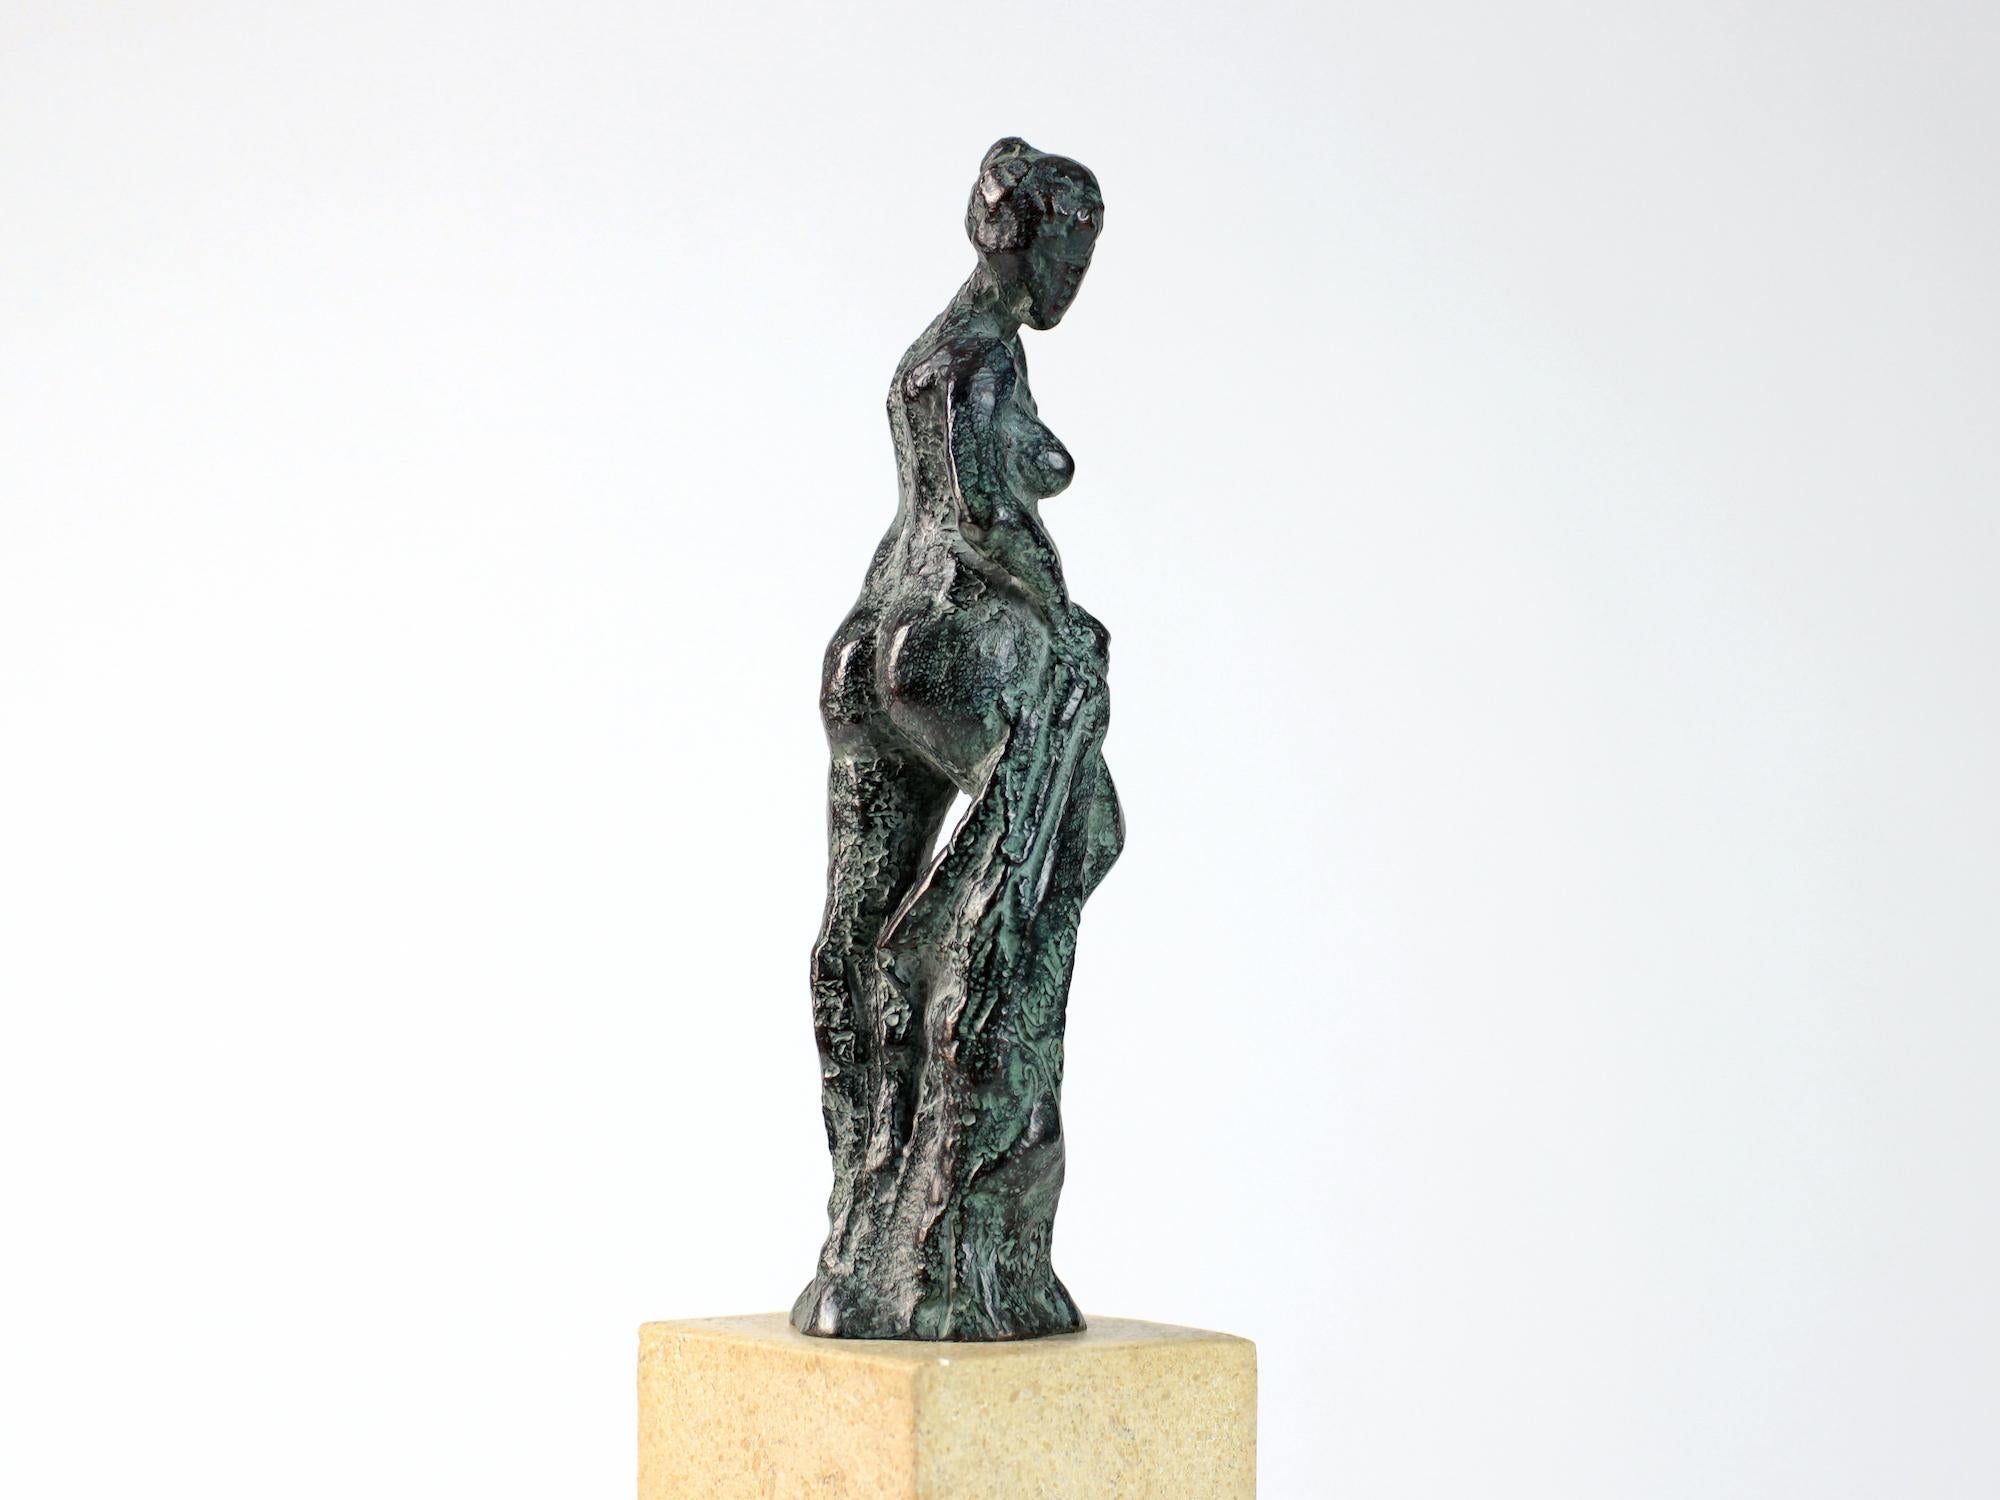 Bather II est une sculpture en bronze de l'artiste contemporain français Yann Guillon. 14 cm × 8 cm × 5 cm.
Disponible en édition limitée de 8 + 4 épreuves d'artiste, chacune signée et numérotée, et vendue avec un socle en métal. 
Yann Guillon